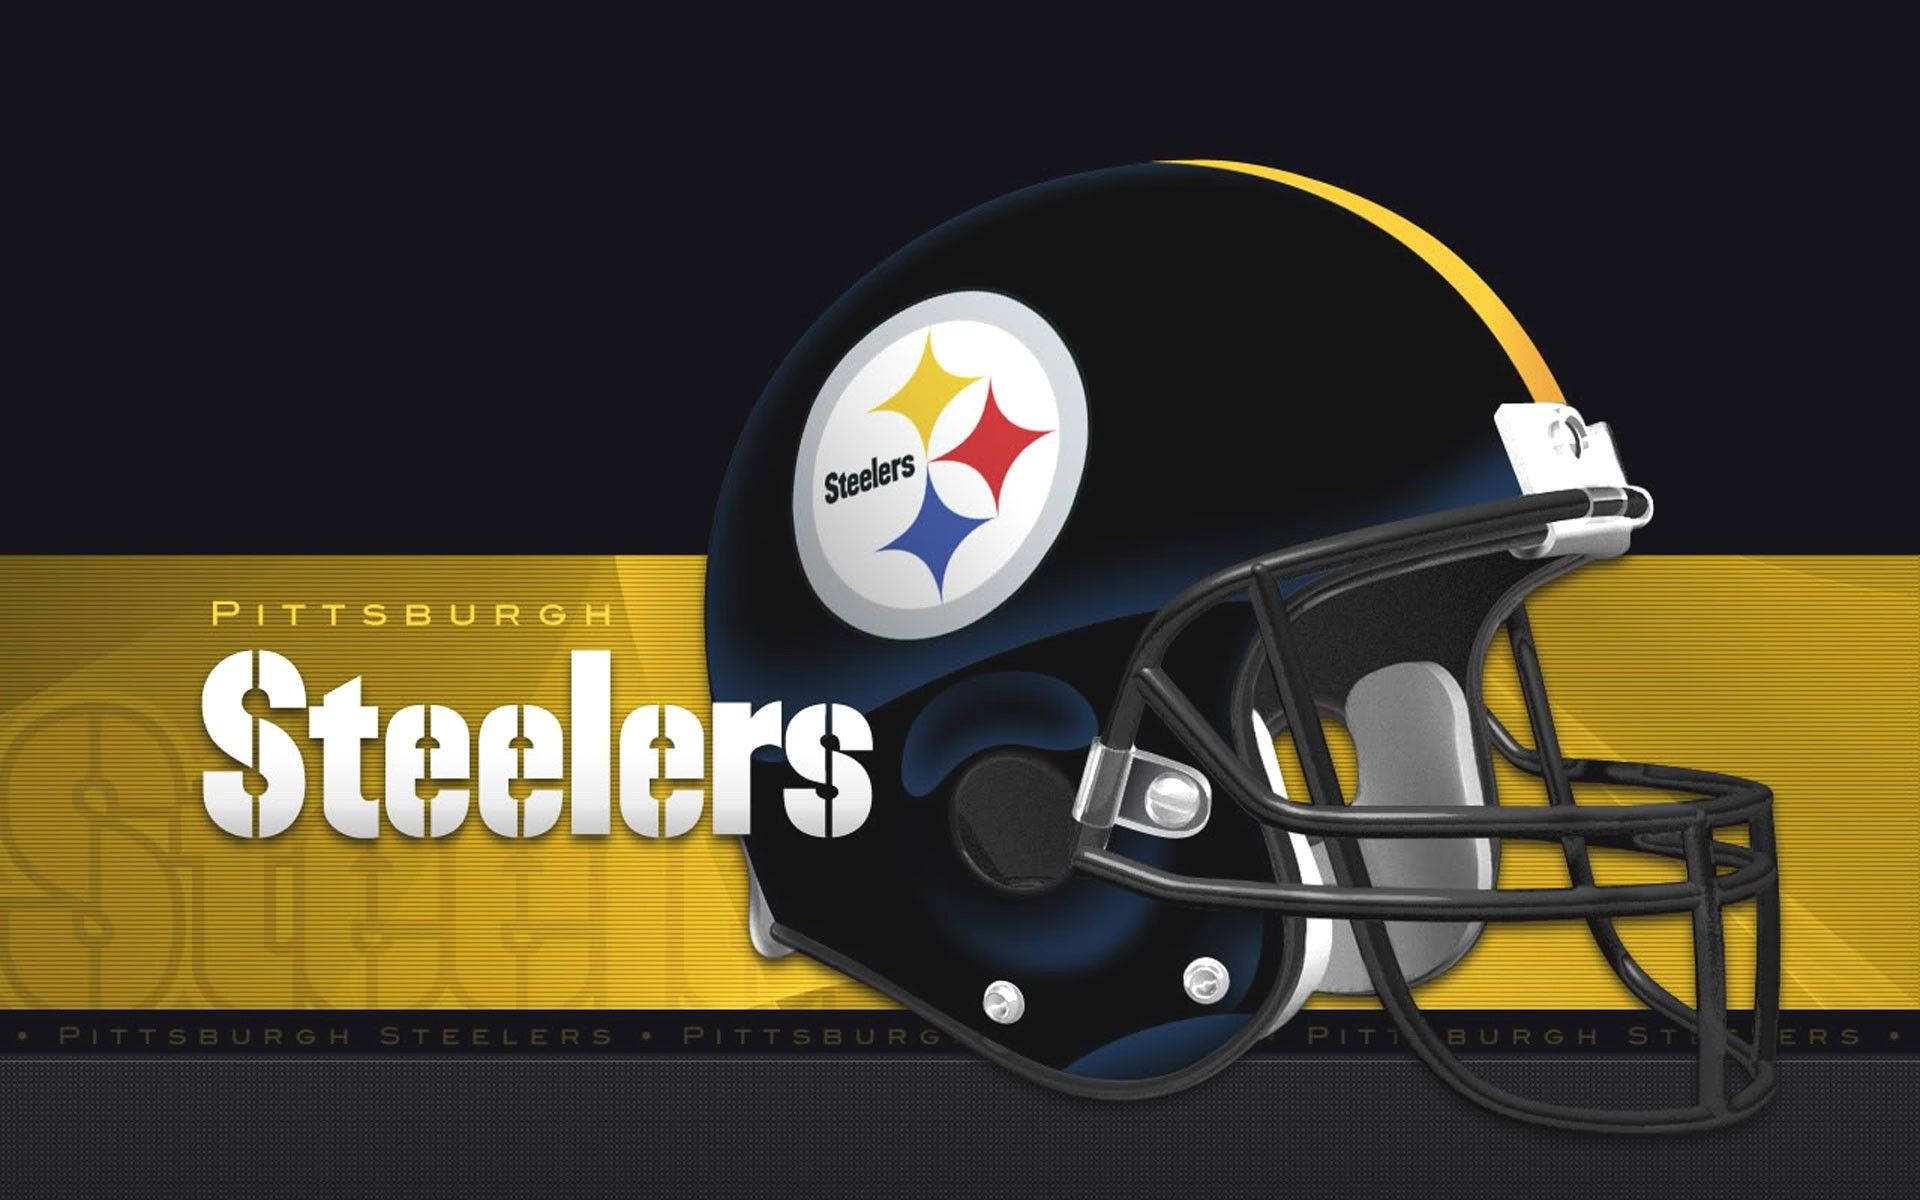 Pittsburgh Steelers Football Helmet Art Wallpaper